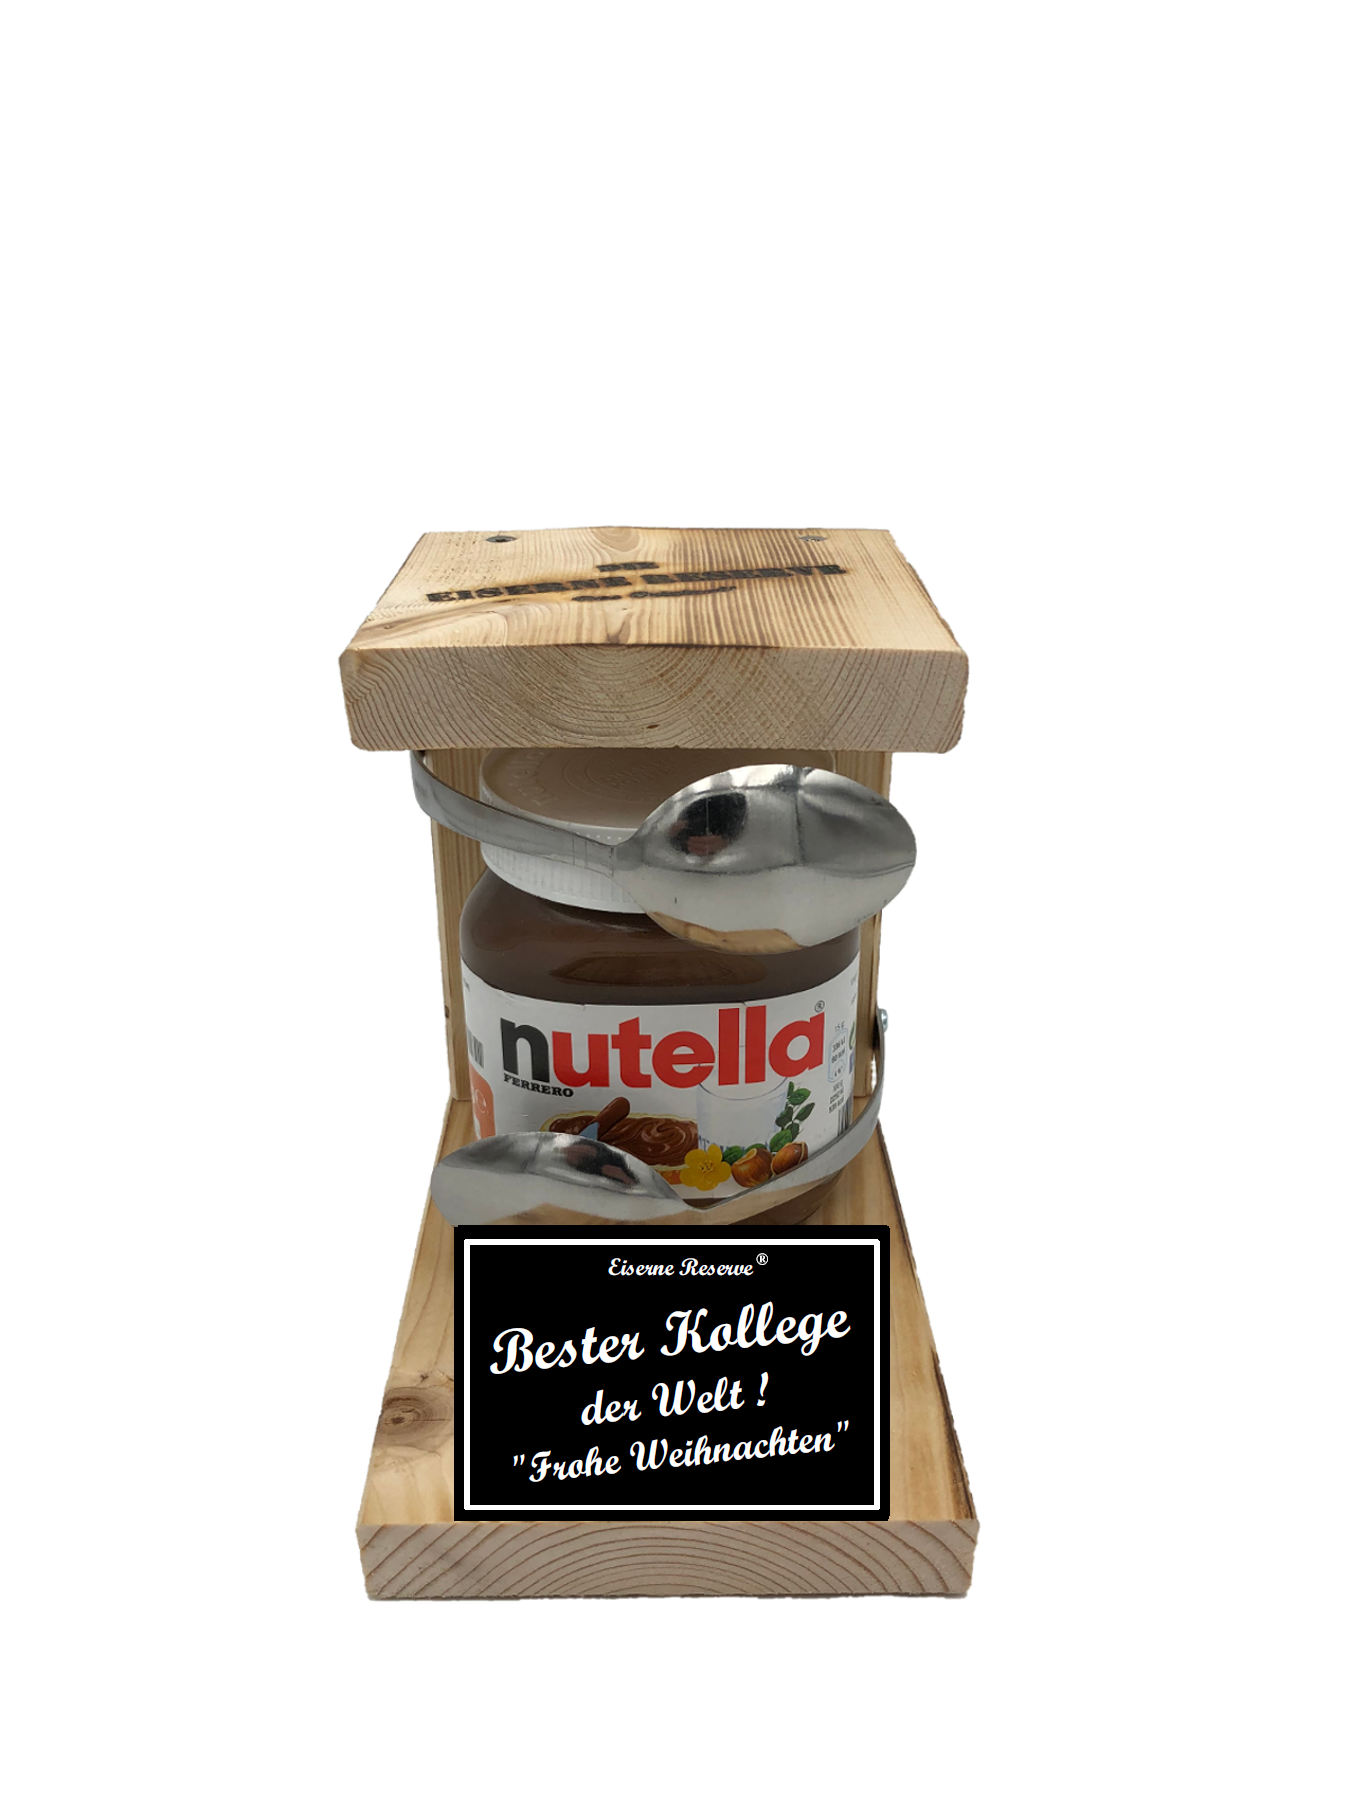 Bester Kollege der Welt Frohe Weihnachten Löffel Nutella Geschenk - Die Nutella Geschenkidee